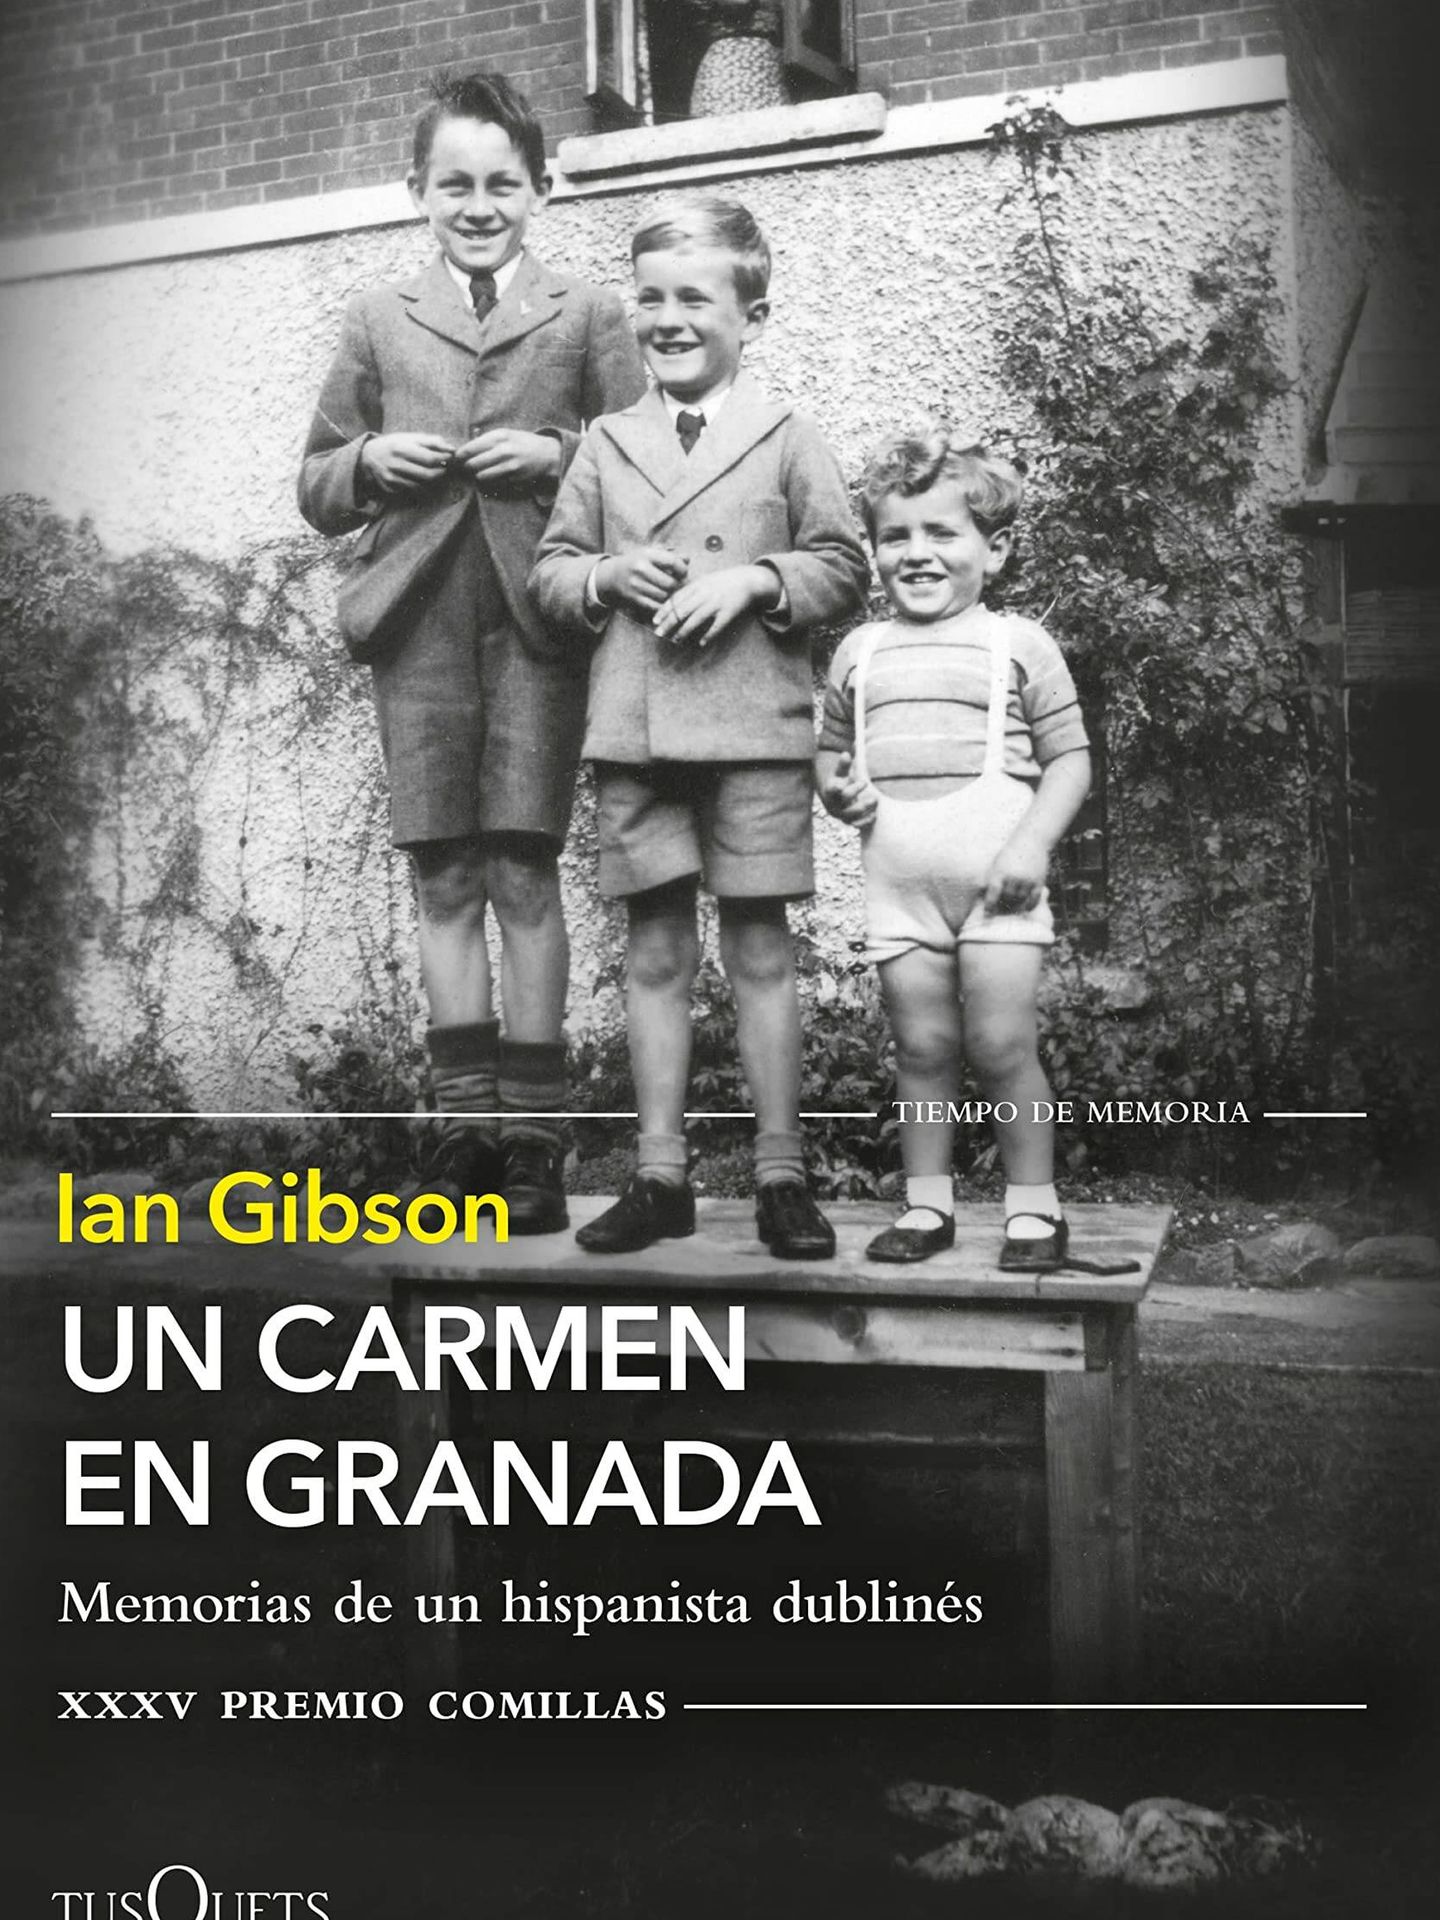 Portada de 'Un Carmen en Granada', el libro de memorias del hispanista Ian Gibson. 